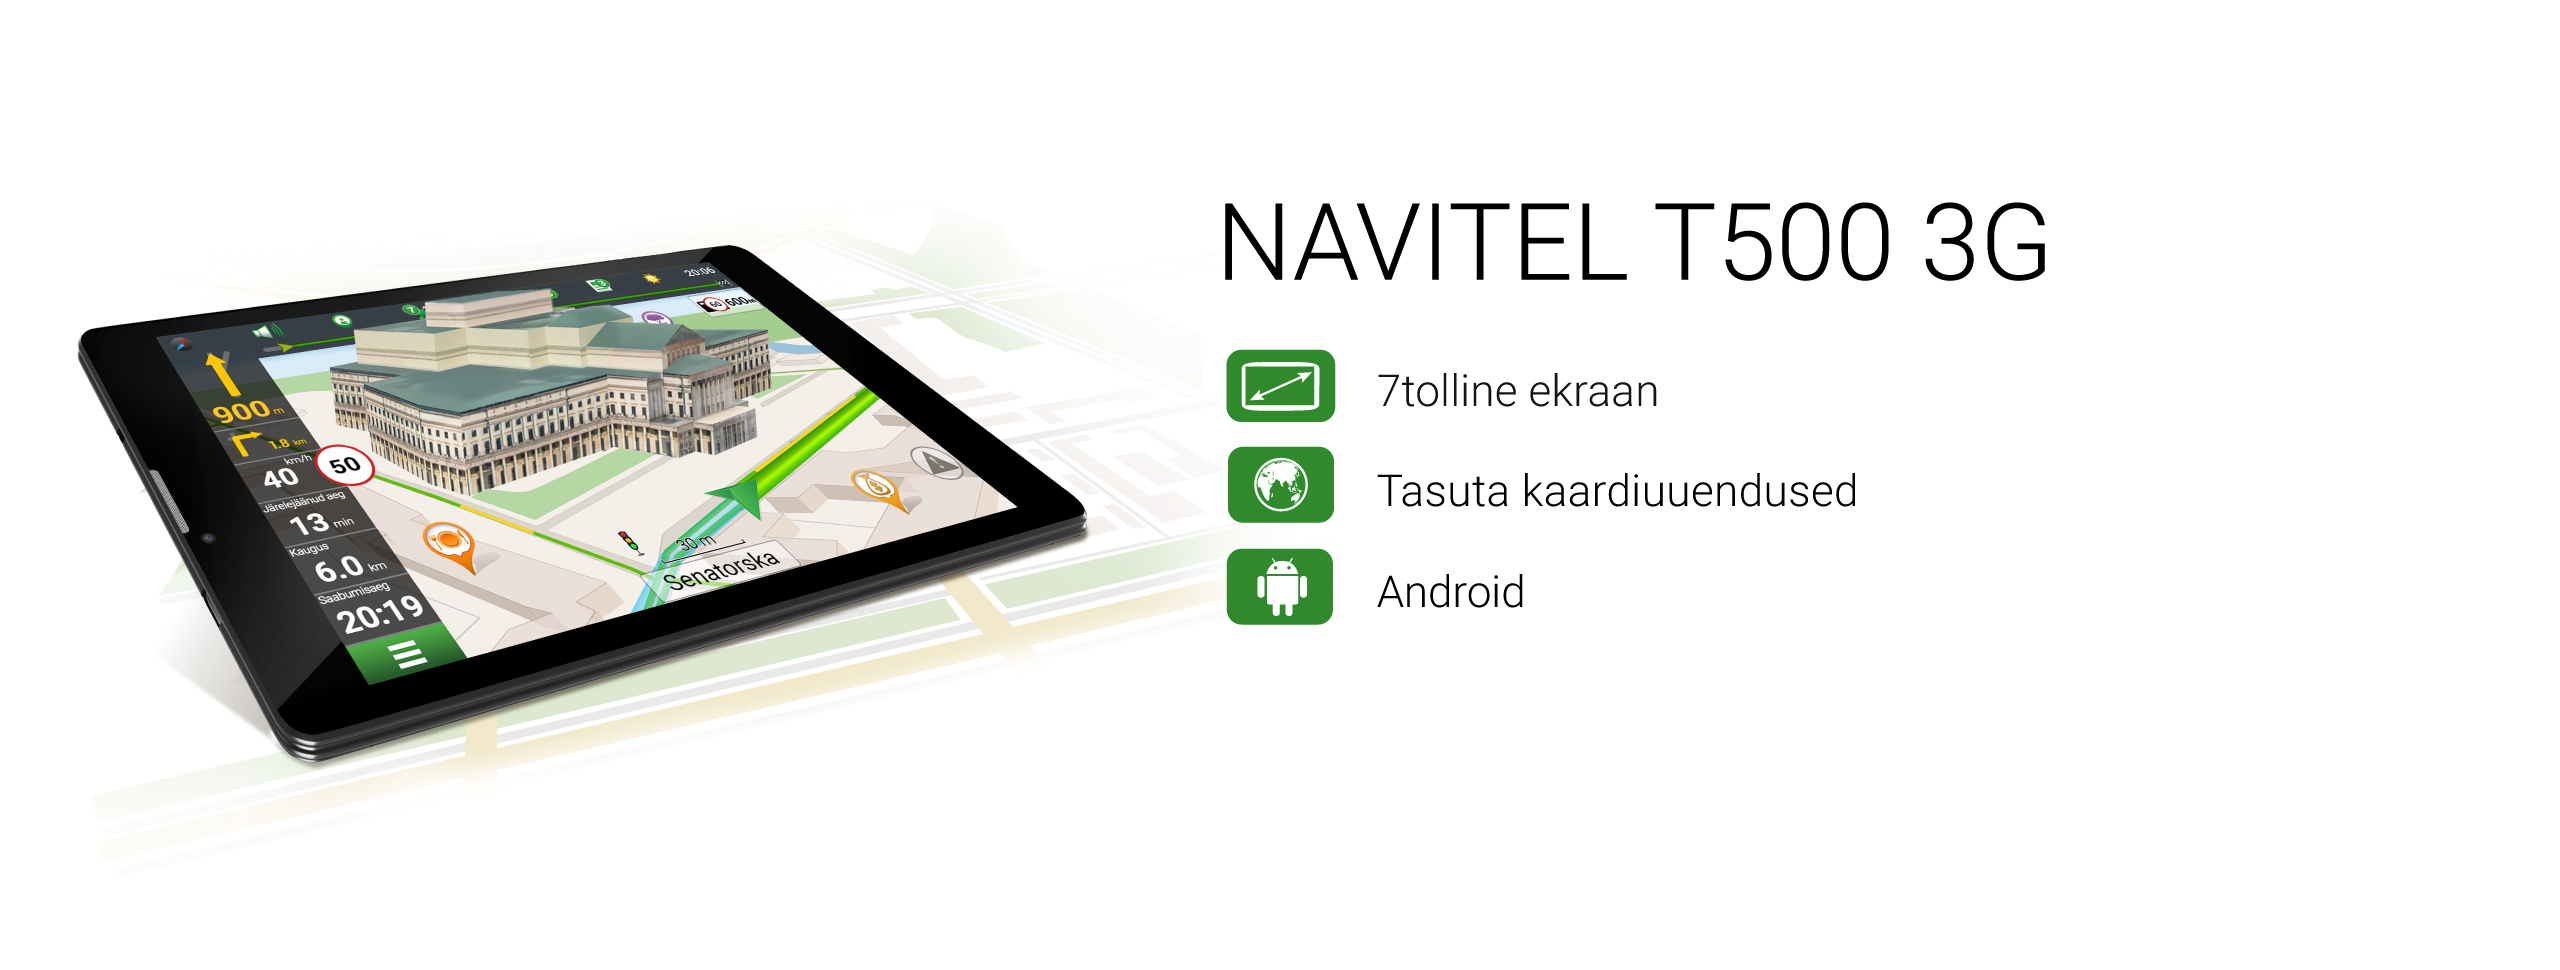 NAVITEL T500 3G Tablet